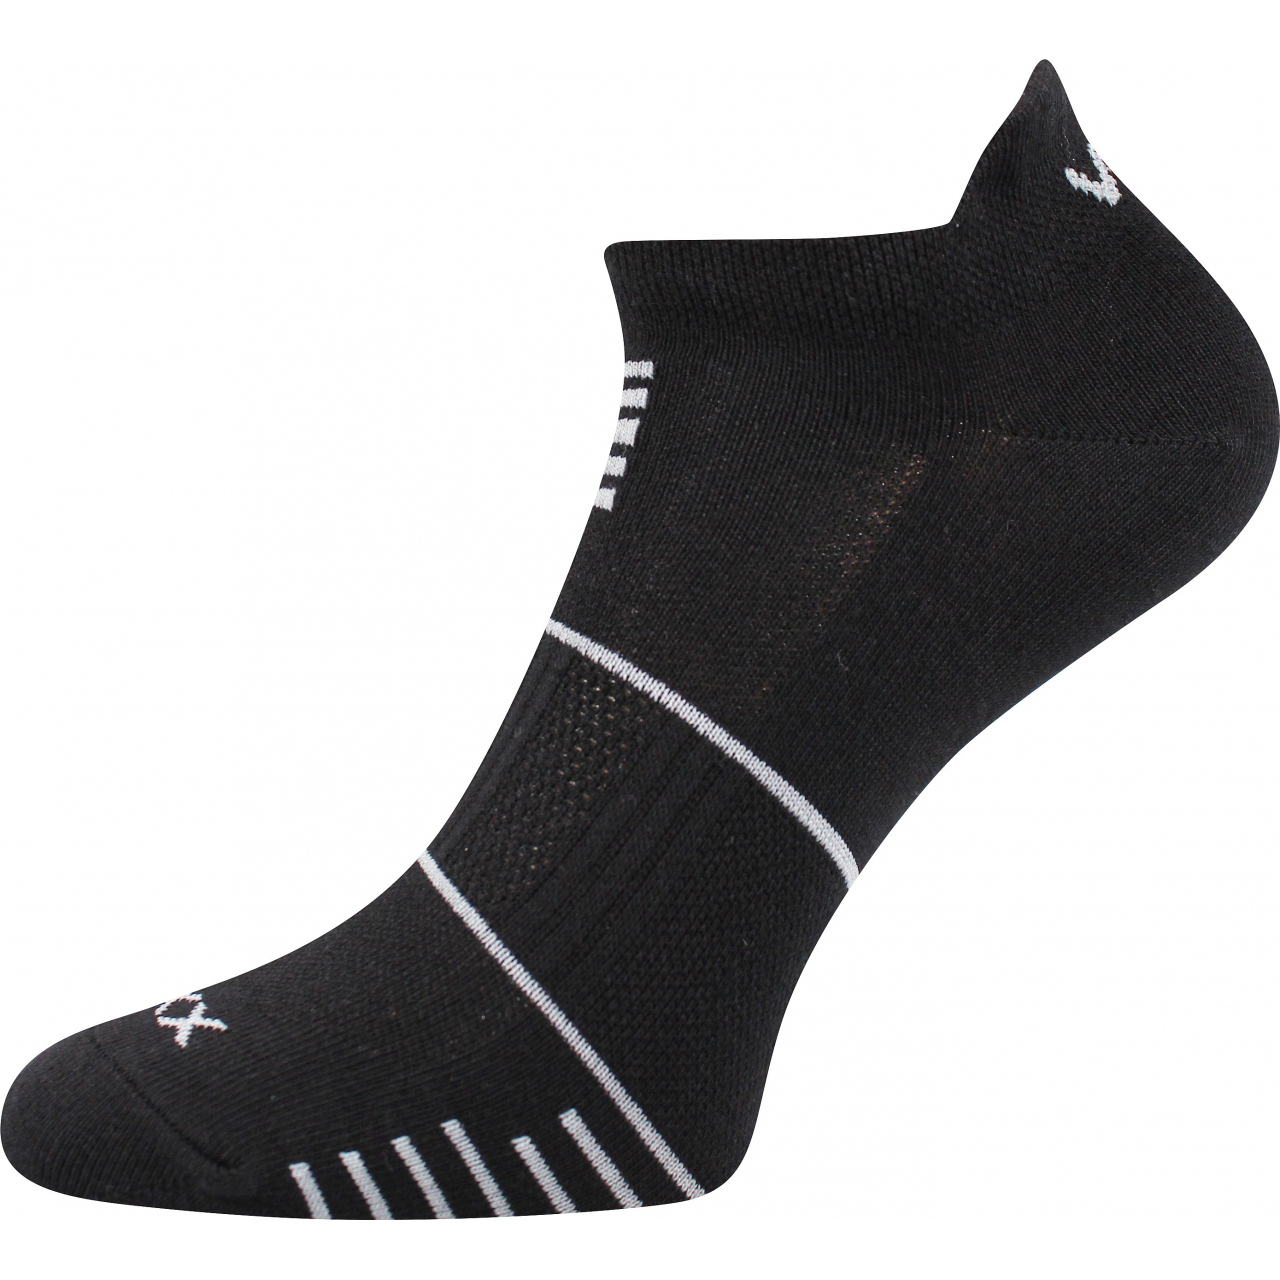 Ponožky sportovní unisex Voxx Avenar - černé, 35-38